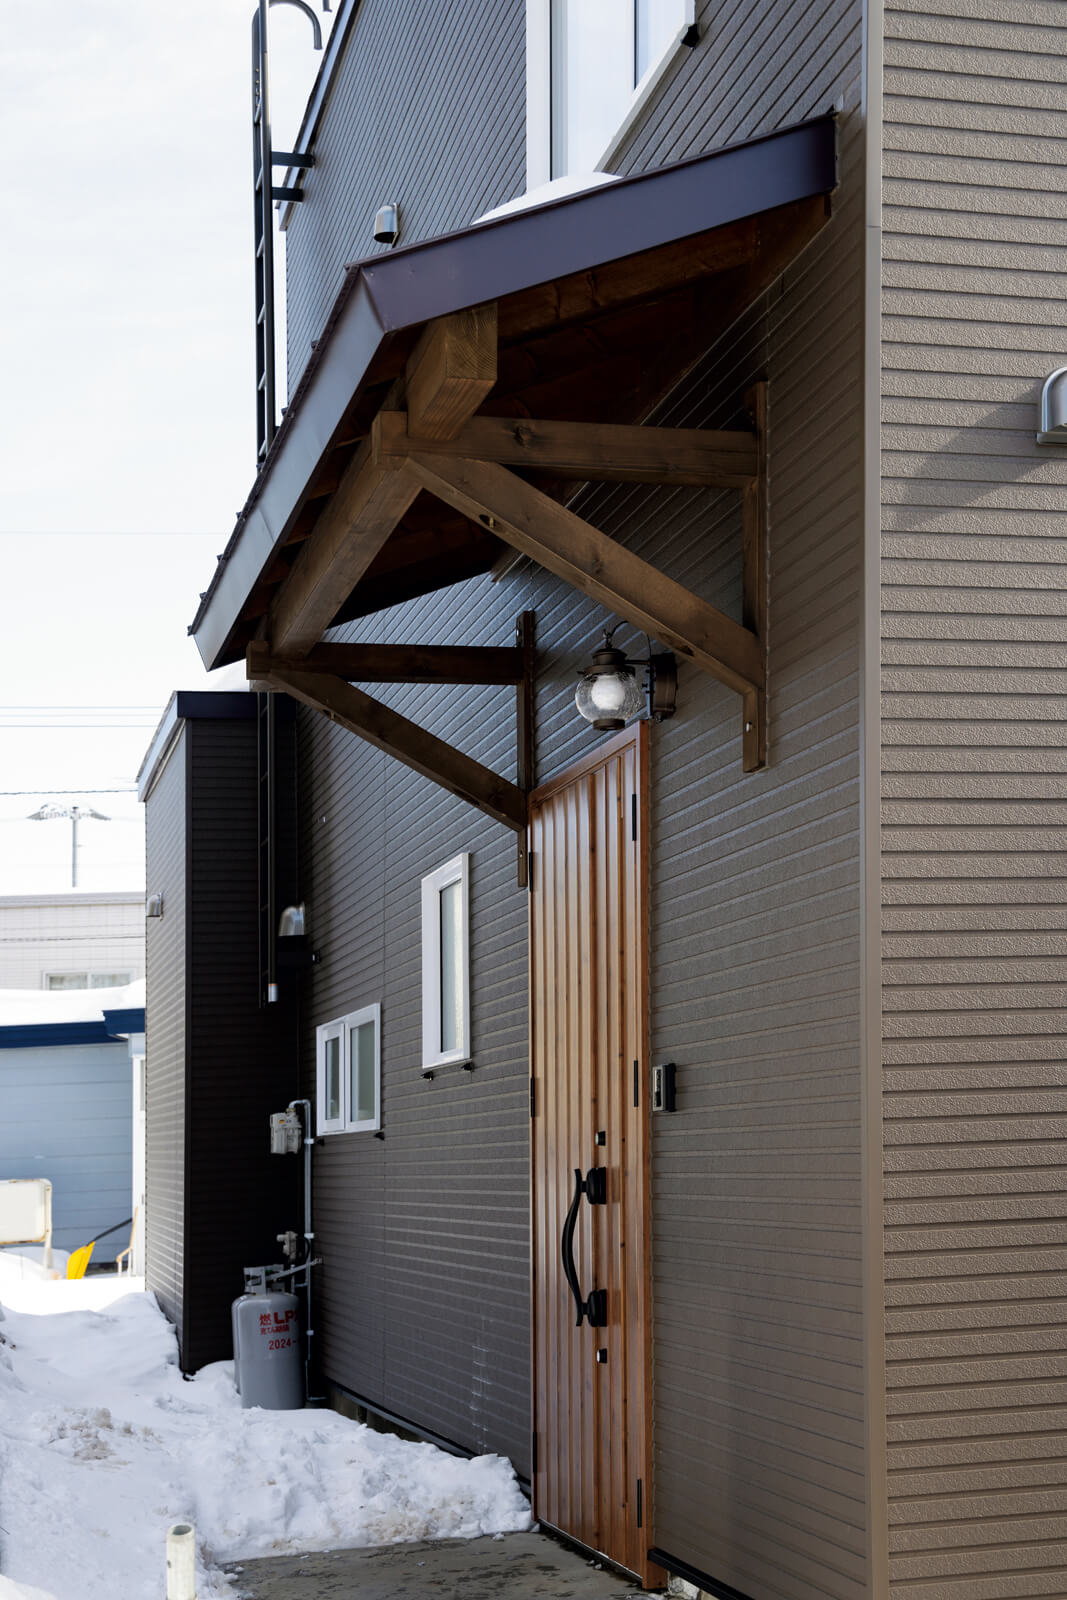 既存の風除室を取り除き、新たに雪や雨を防ぐ小屋根をかけた玄関ポーチ。玄関ドアも断熱・気密性能の高いものに交換した